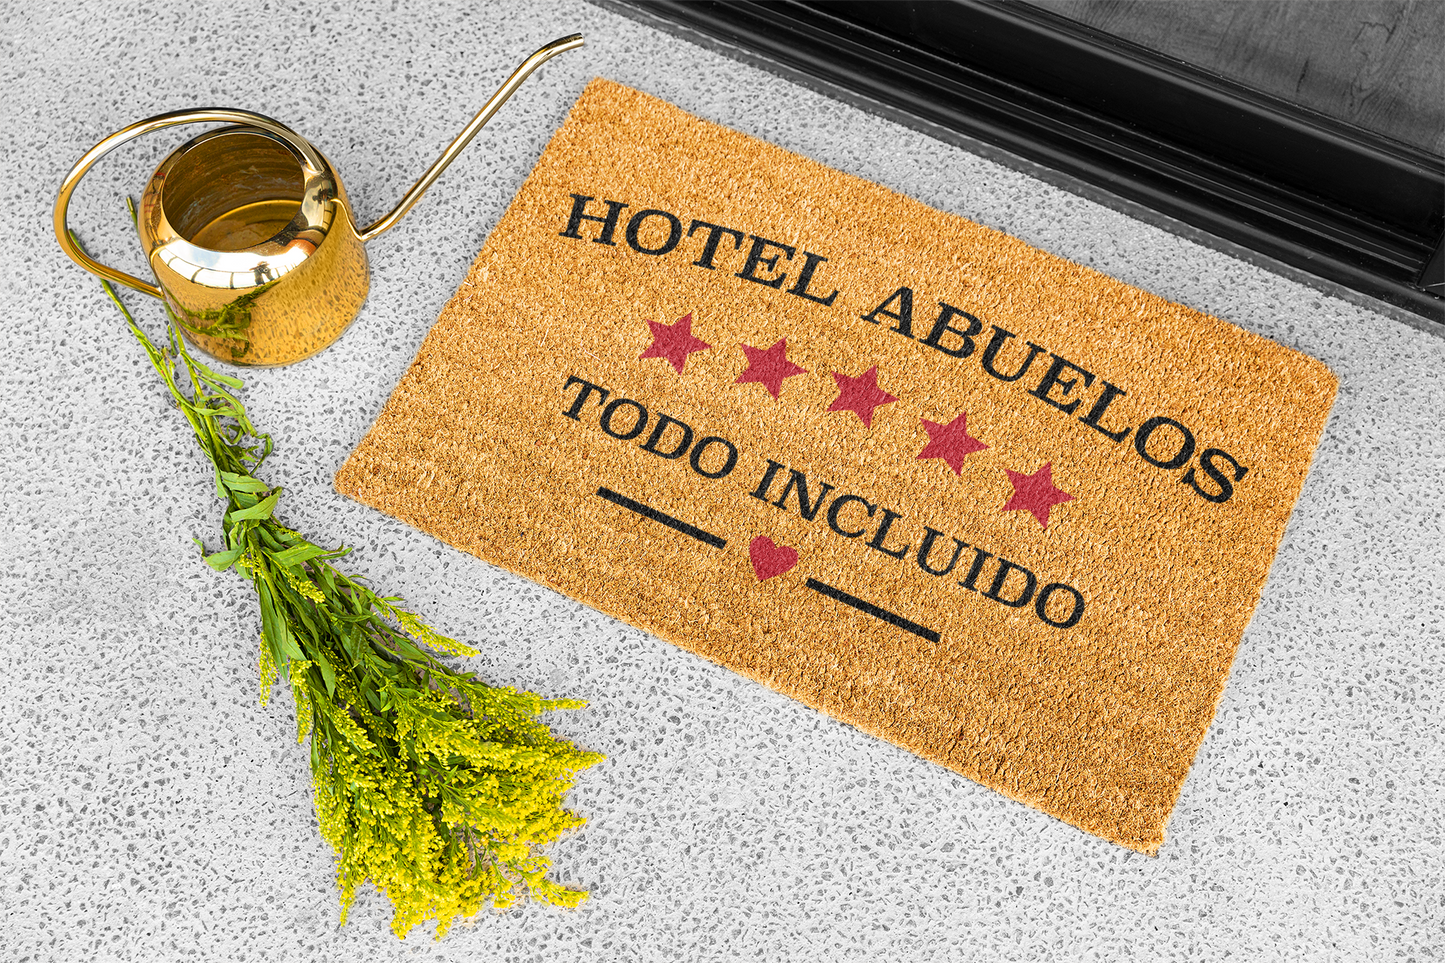 Felpudo "Hotel Abuelos. Todo incluido" 33x60cm. 100% fibra de coco. Eco-friendly.